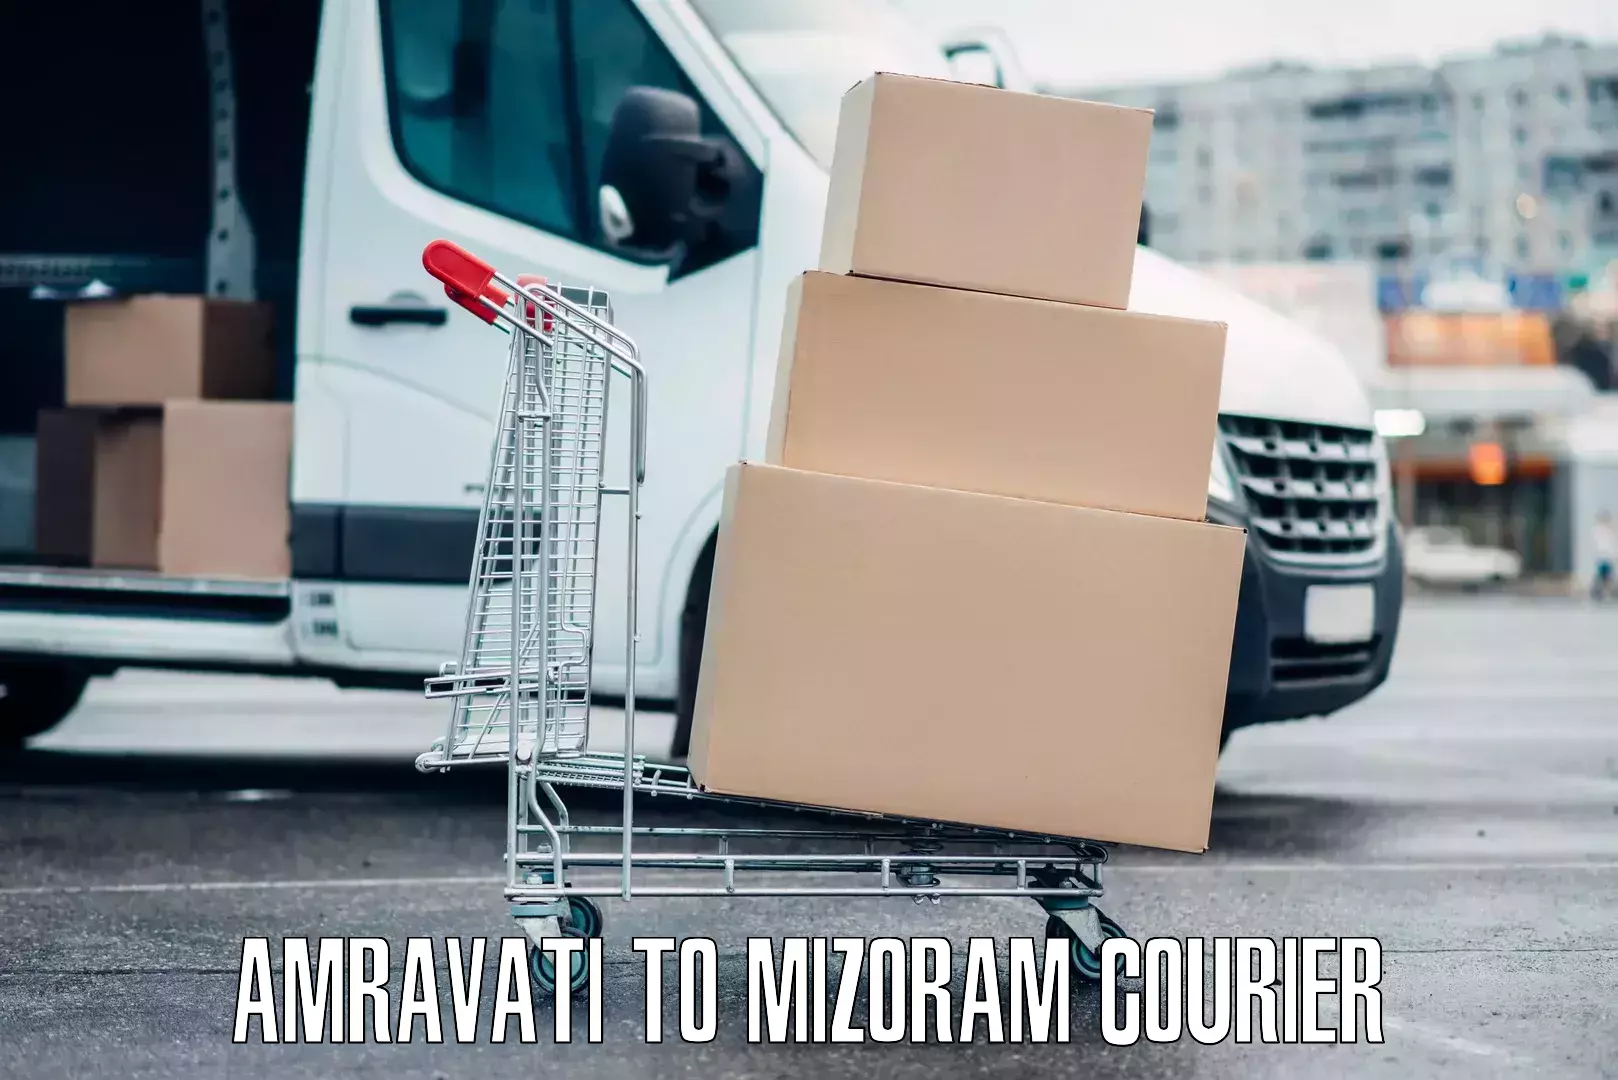 Luggage shipping specialists Amravati to Mizoram